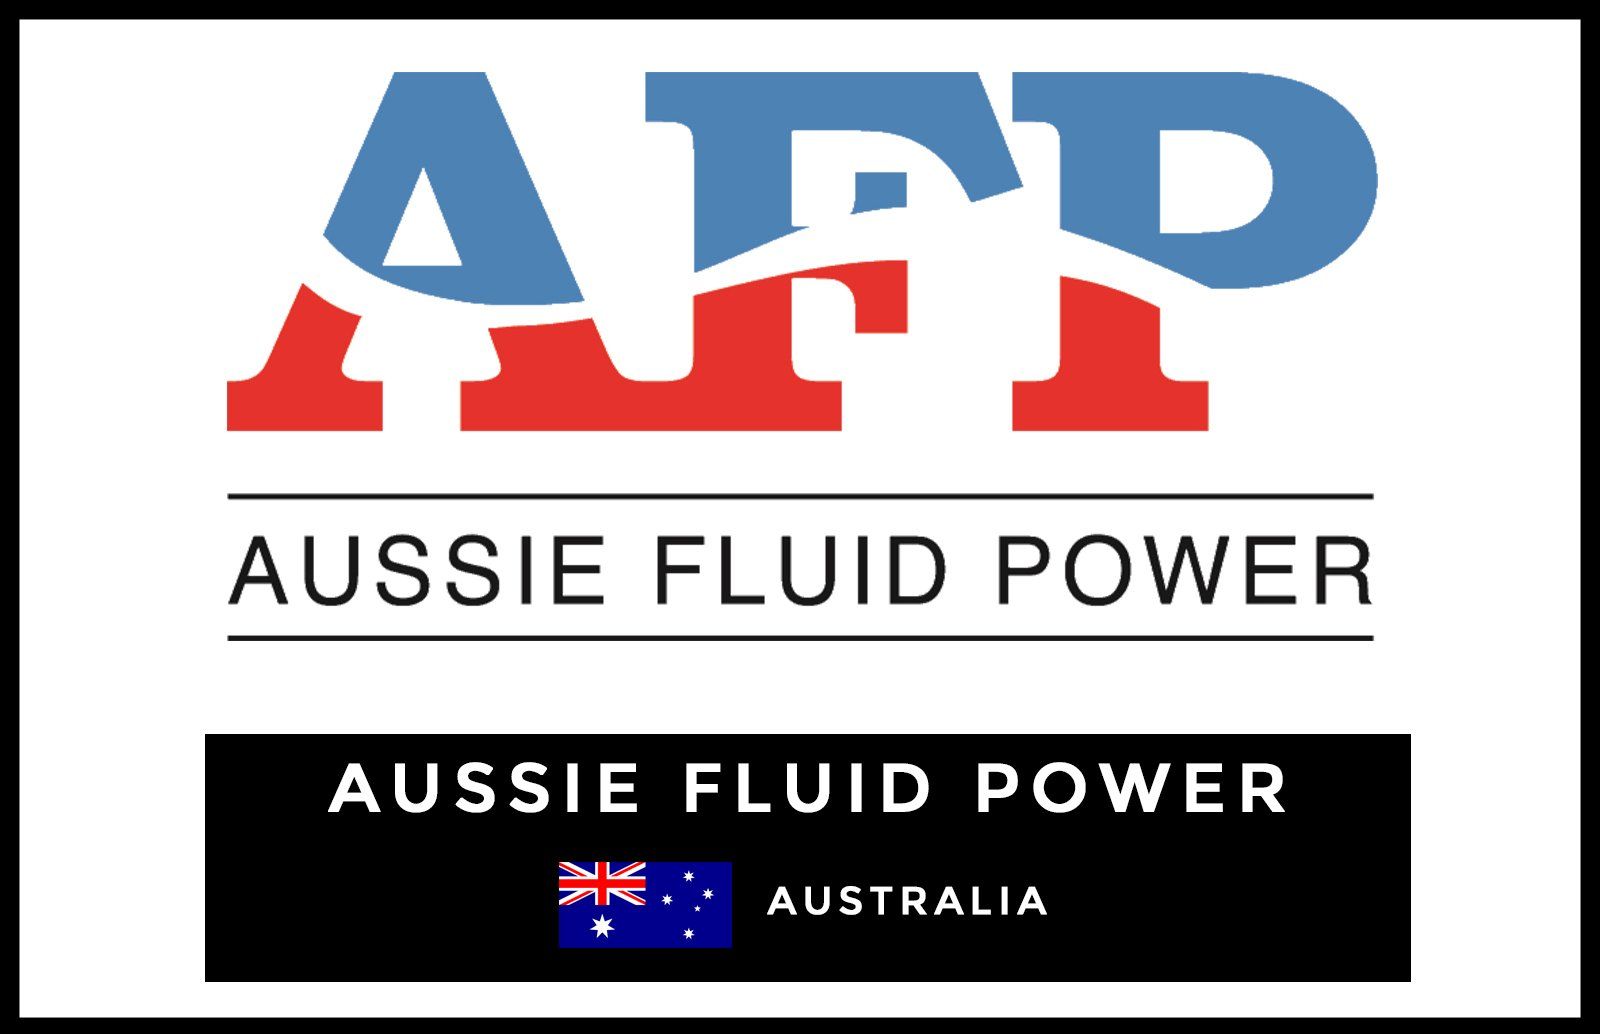 Aussie Fluid Power